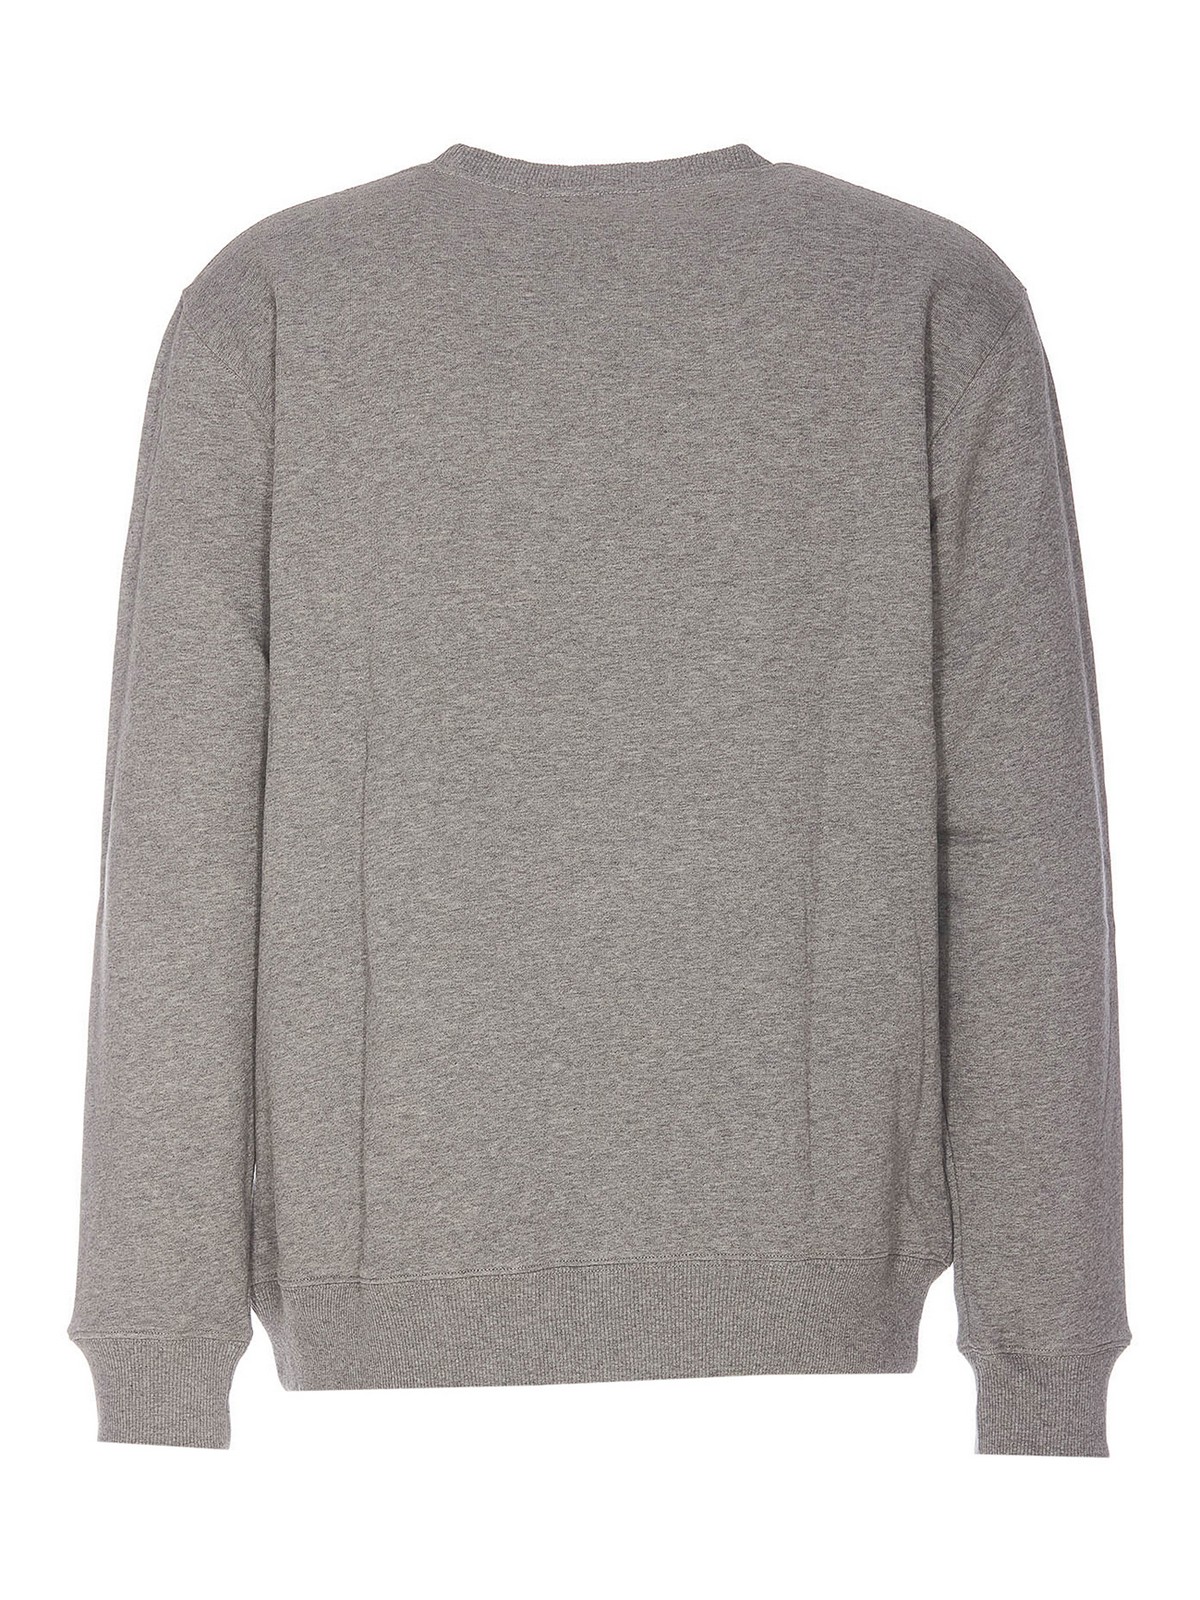 Shop Etudes Studio Story Sweatshirt In Grey